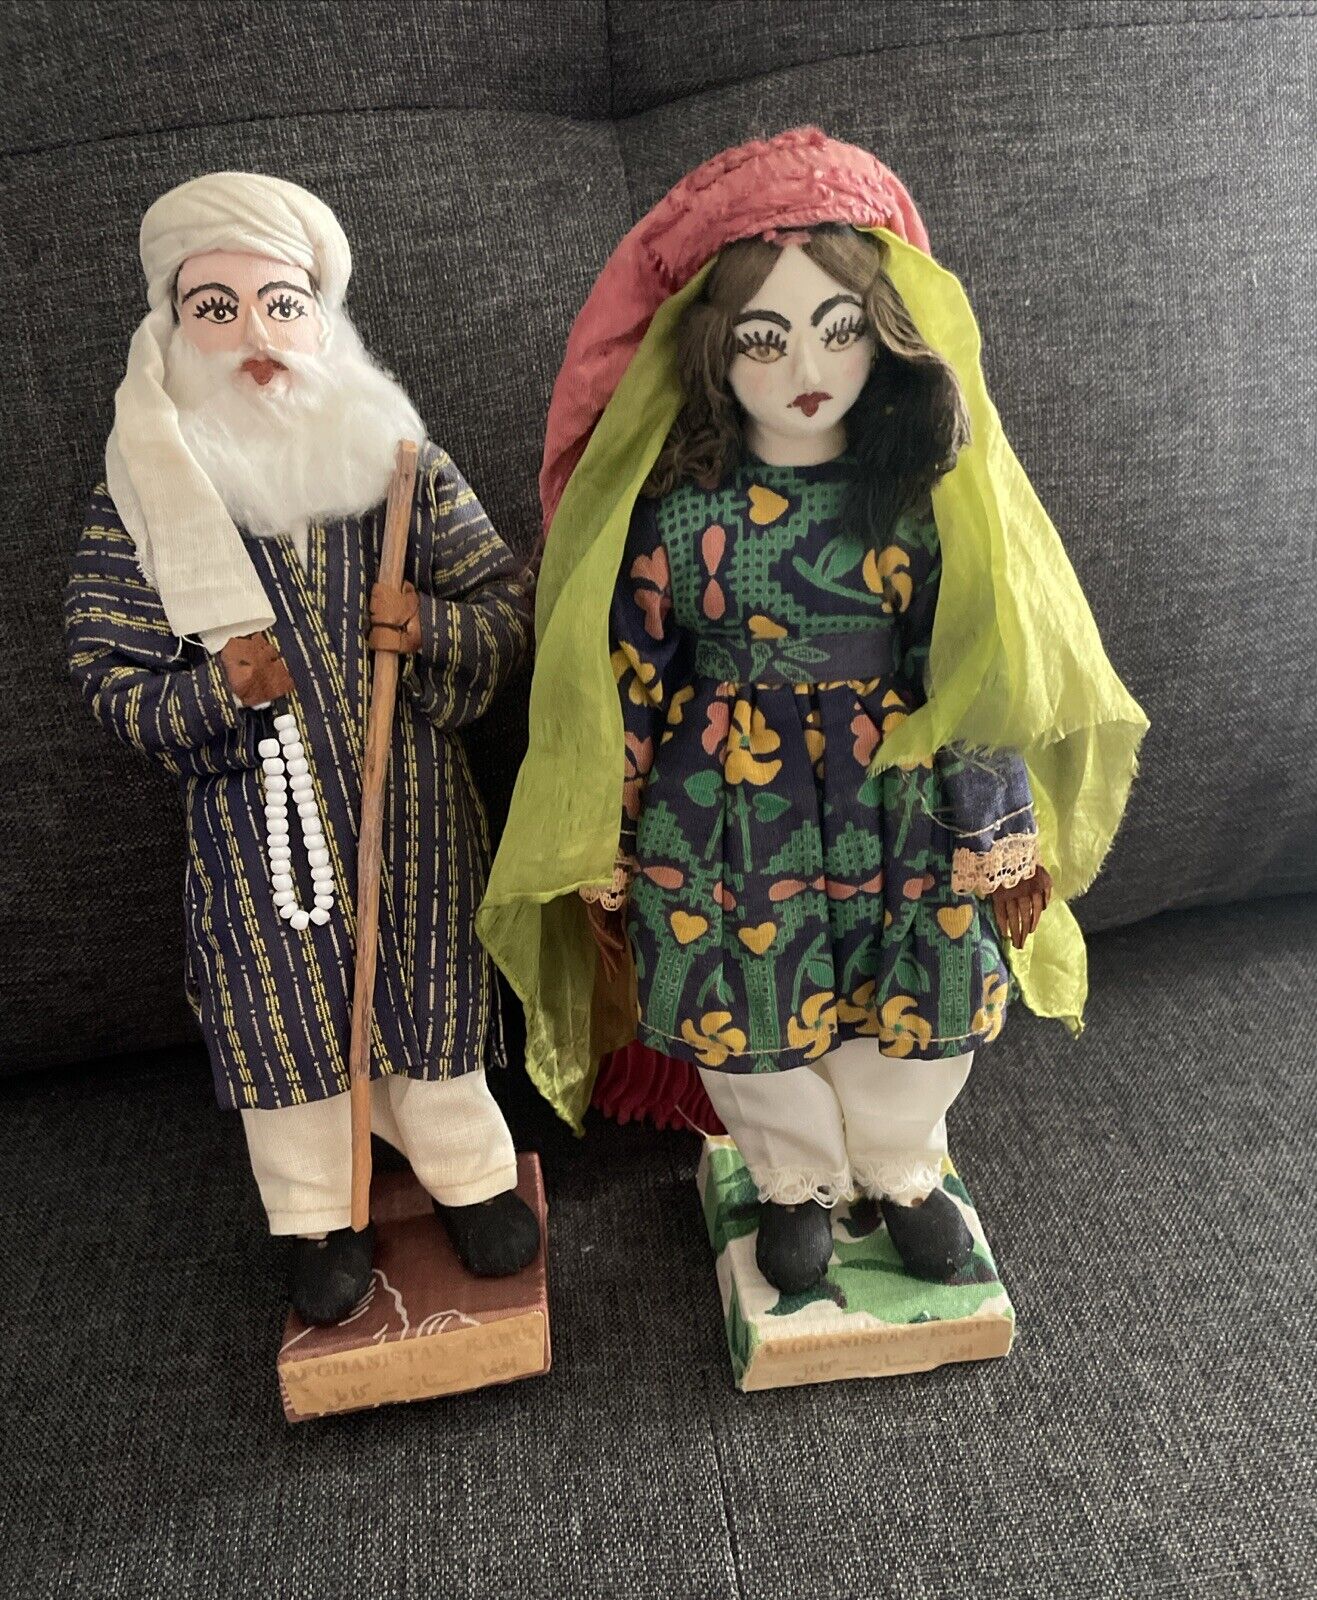 Vintage Arab Couple Doll Figure Set. Hand Painted on wood blocks